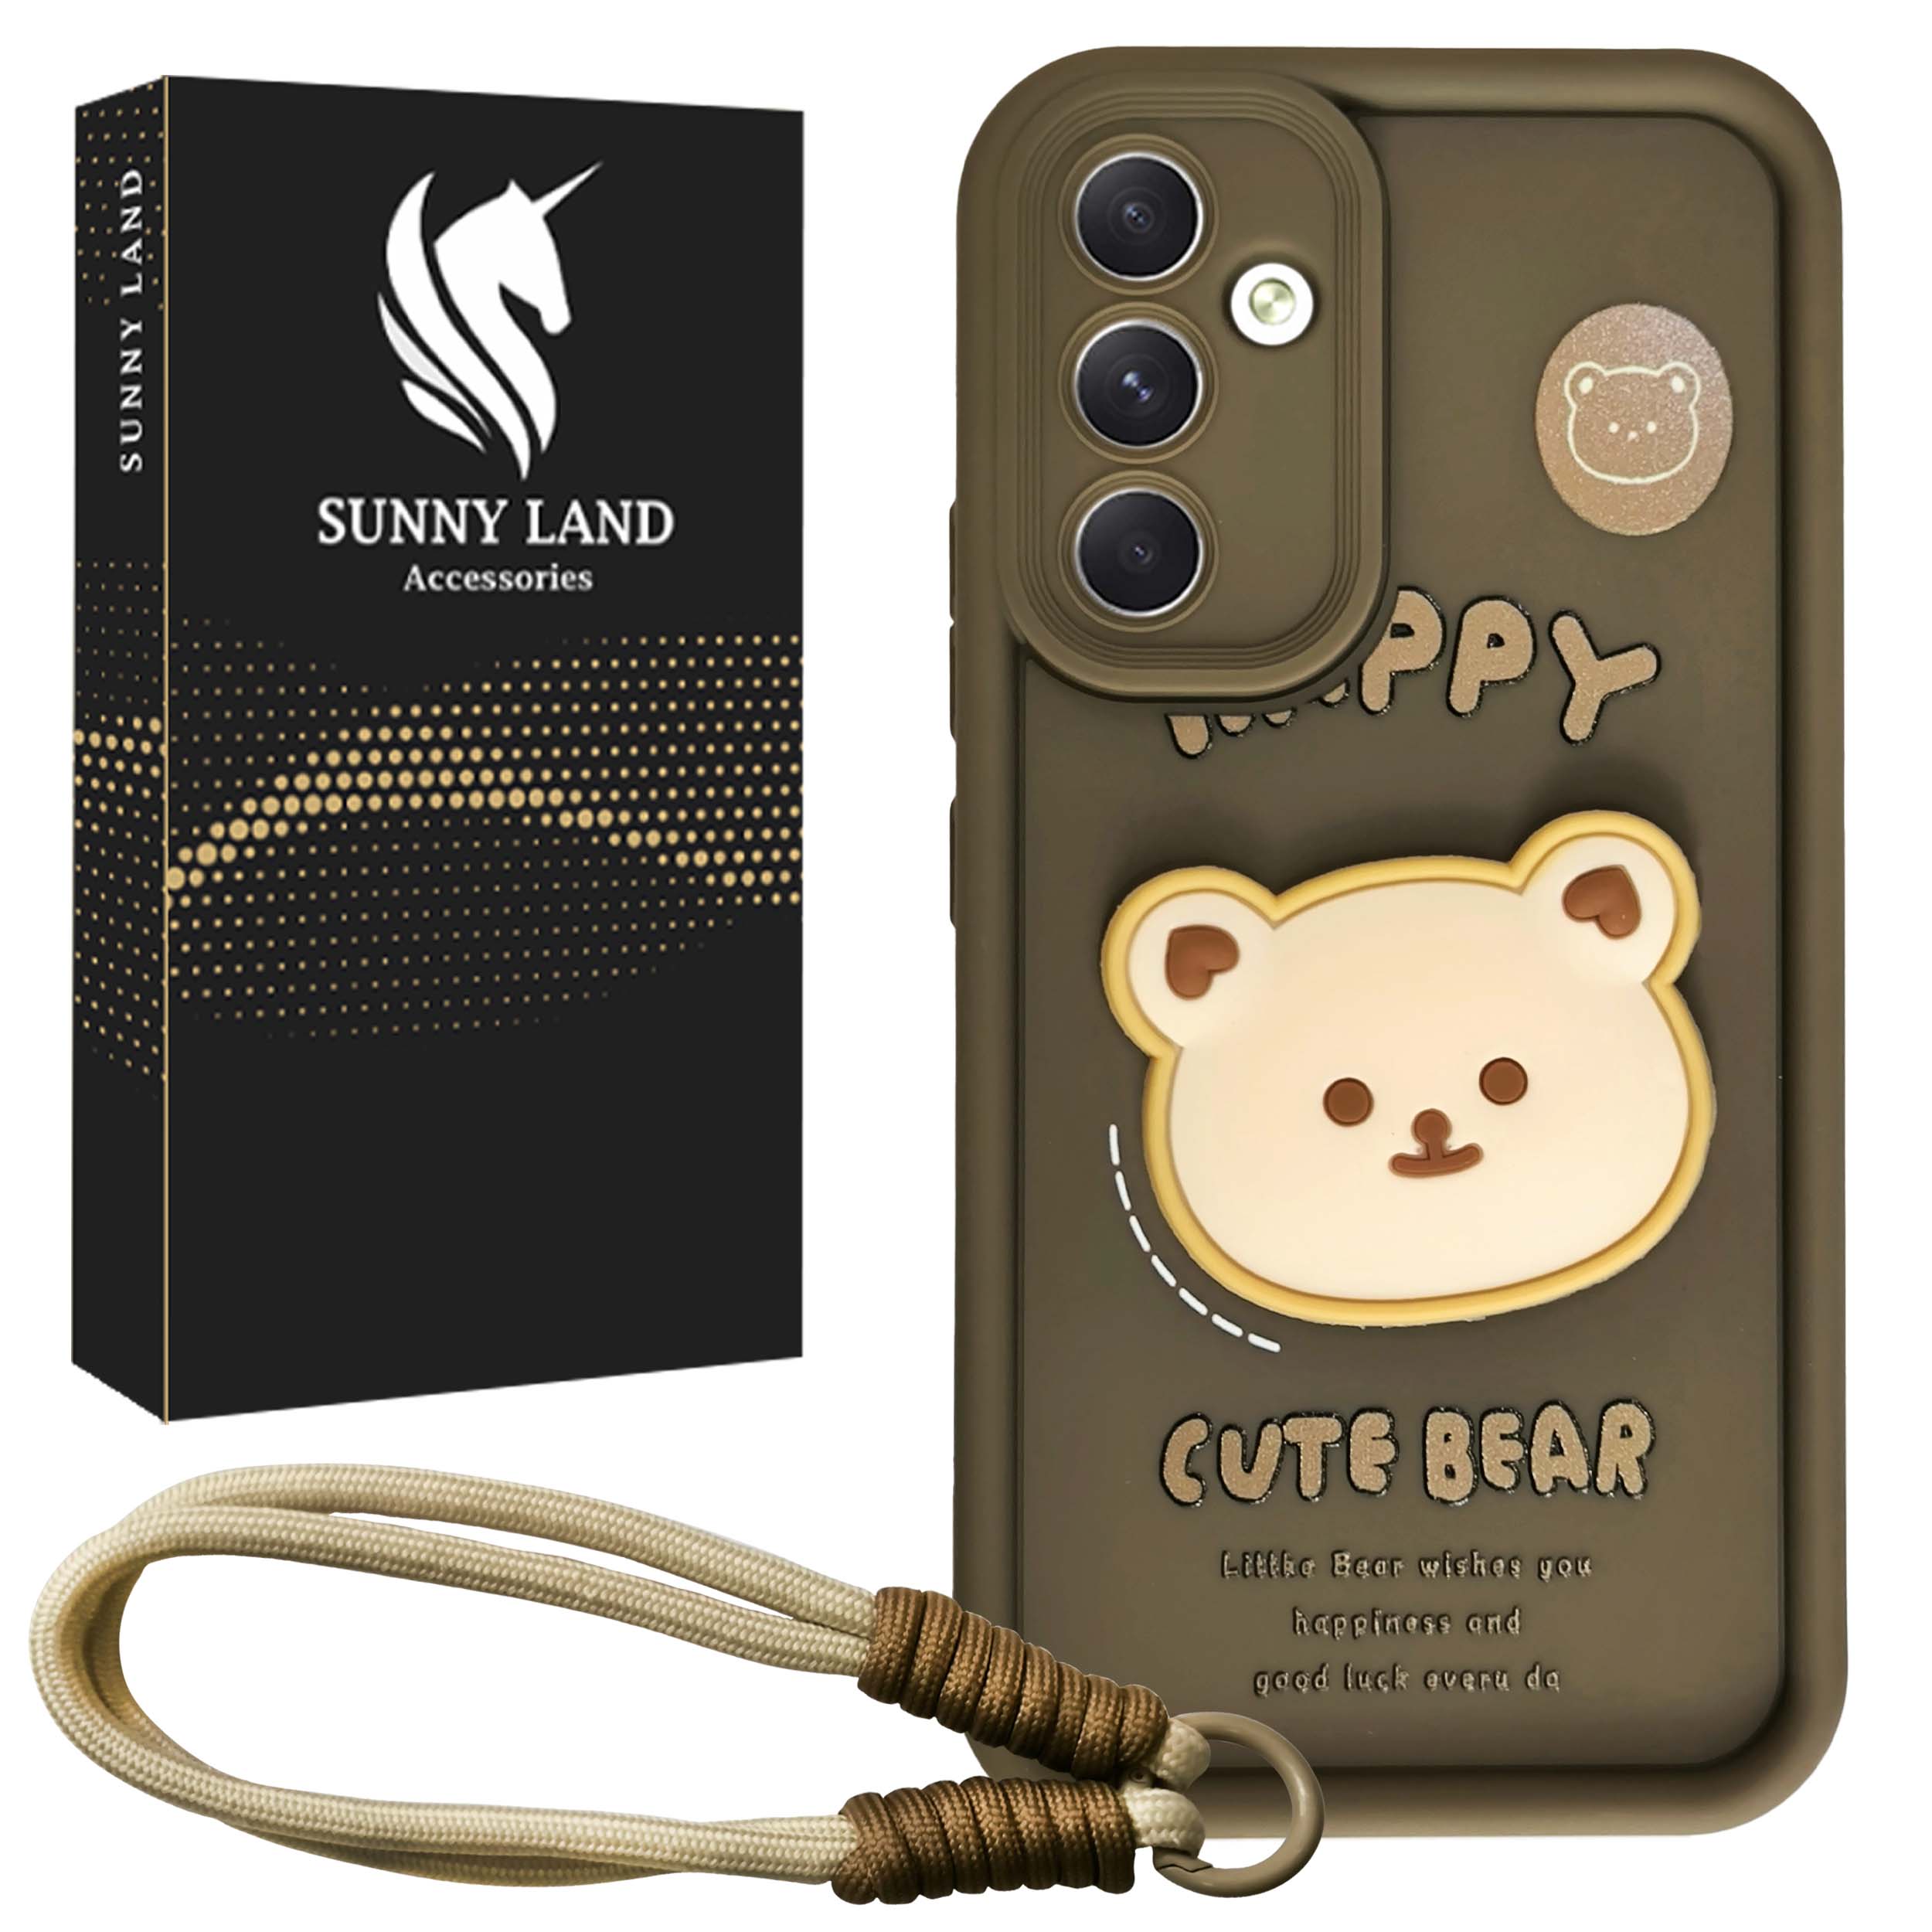 کاور سانی لند مدل Bear مناسب برای گوشی موبایل سامسونگ Galaxy A35 به همراه بندآویز